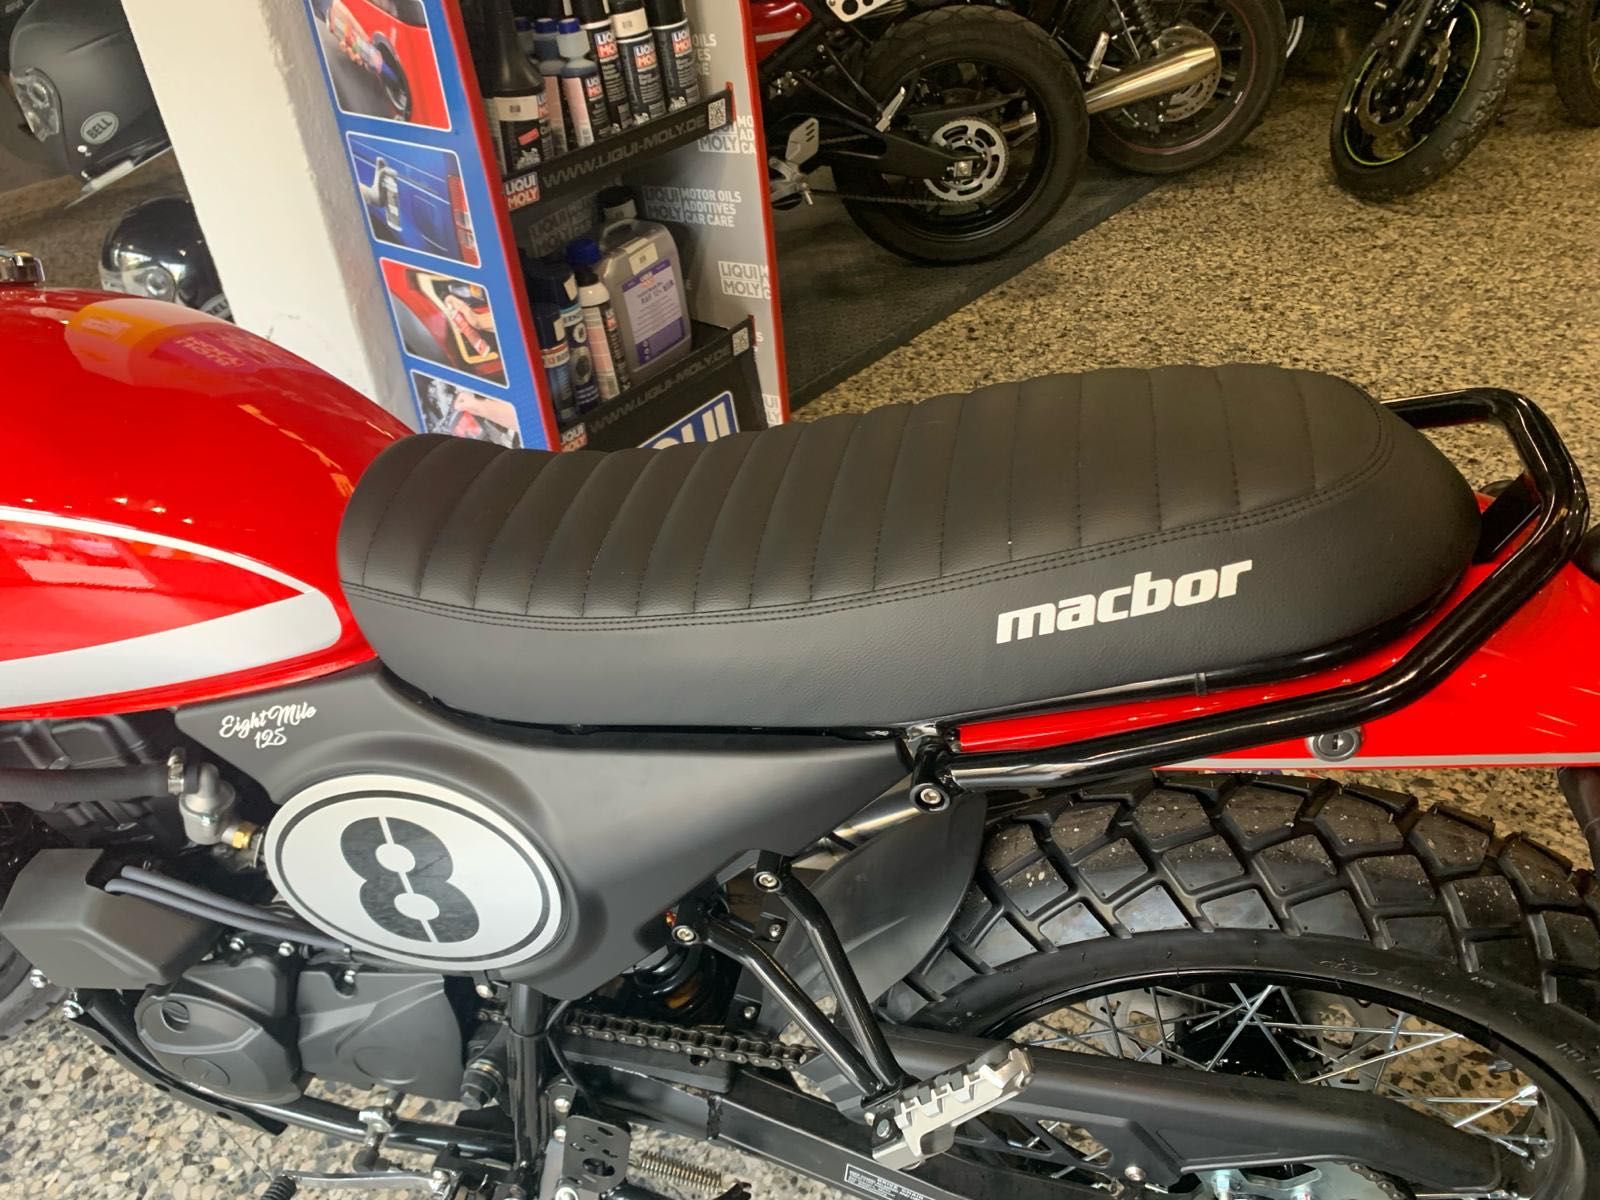 Macbor Eight Mile Uma 125 cc de extraordinario desempenho (Nova-0 Kms)